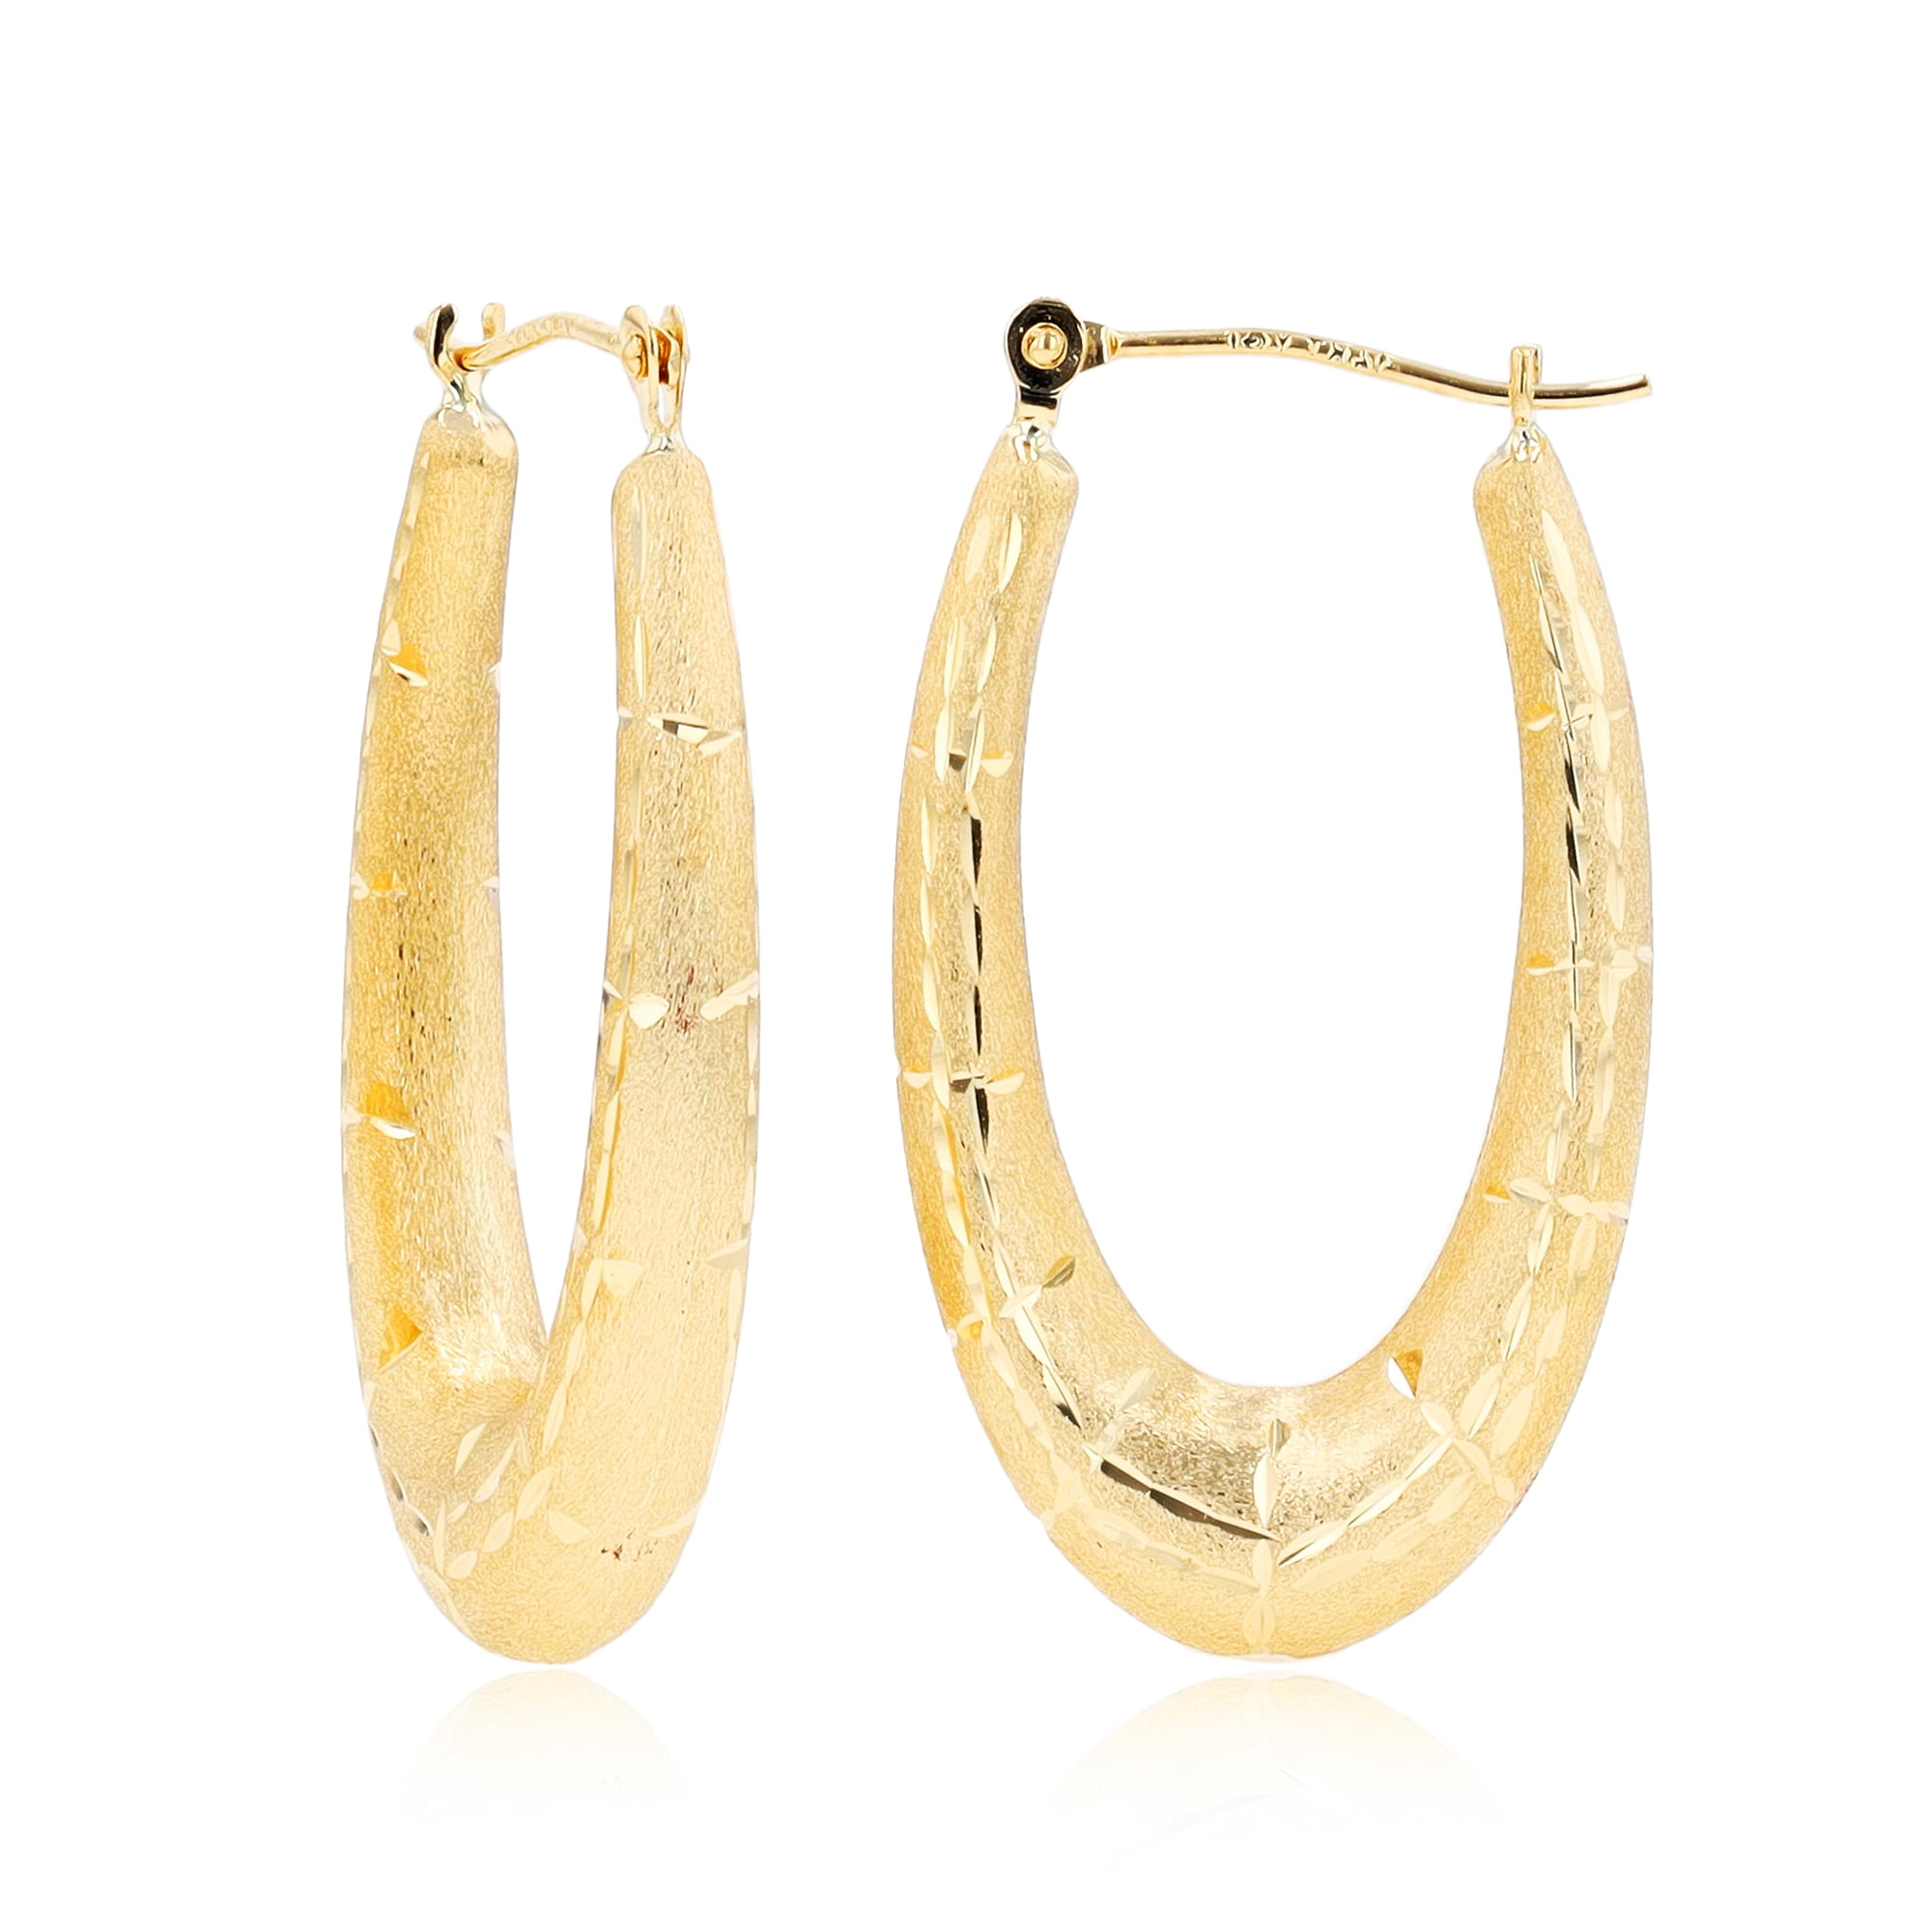 Solid 14K Yellow Gold Diamond Cut Two Tone Hoop Earrings